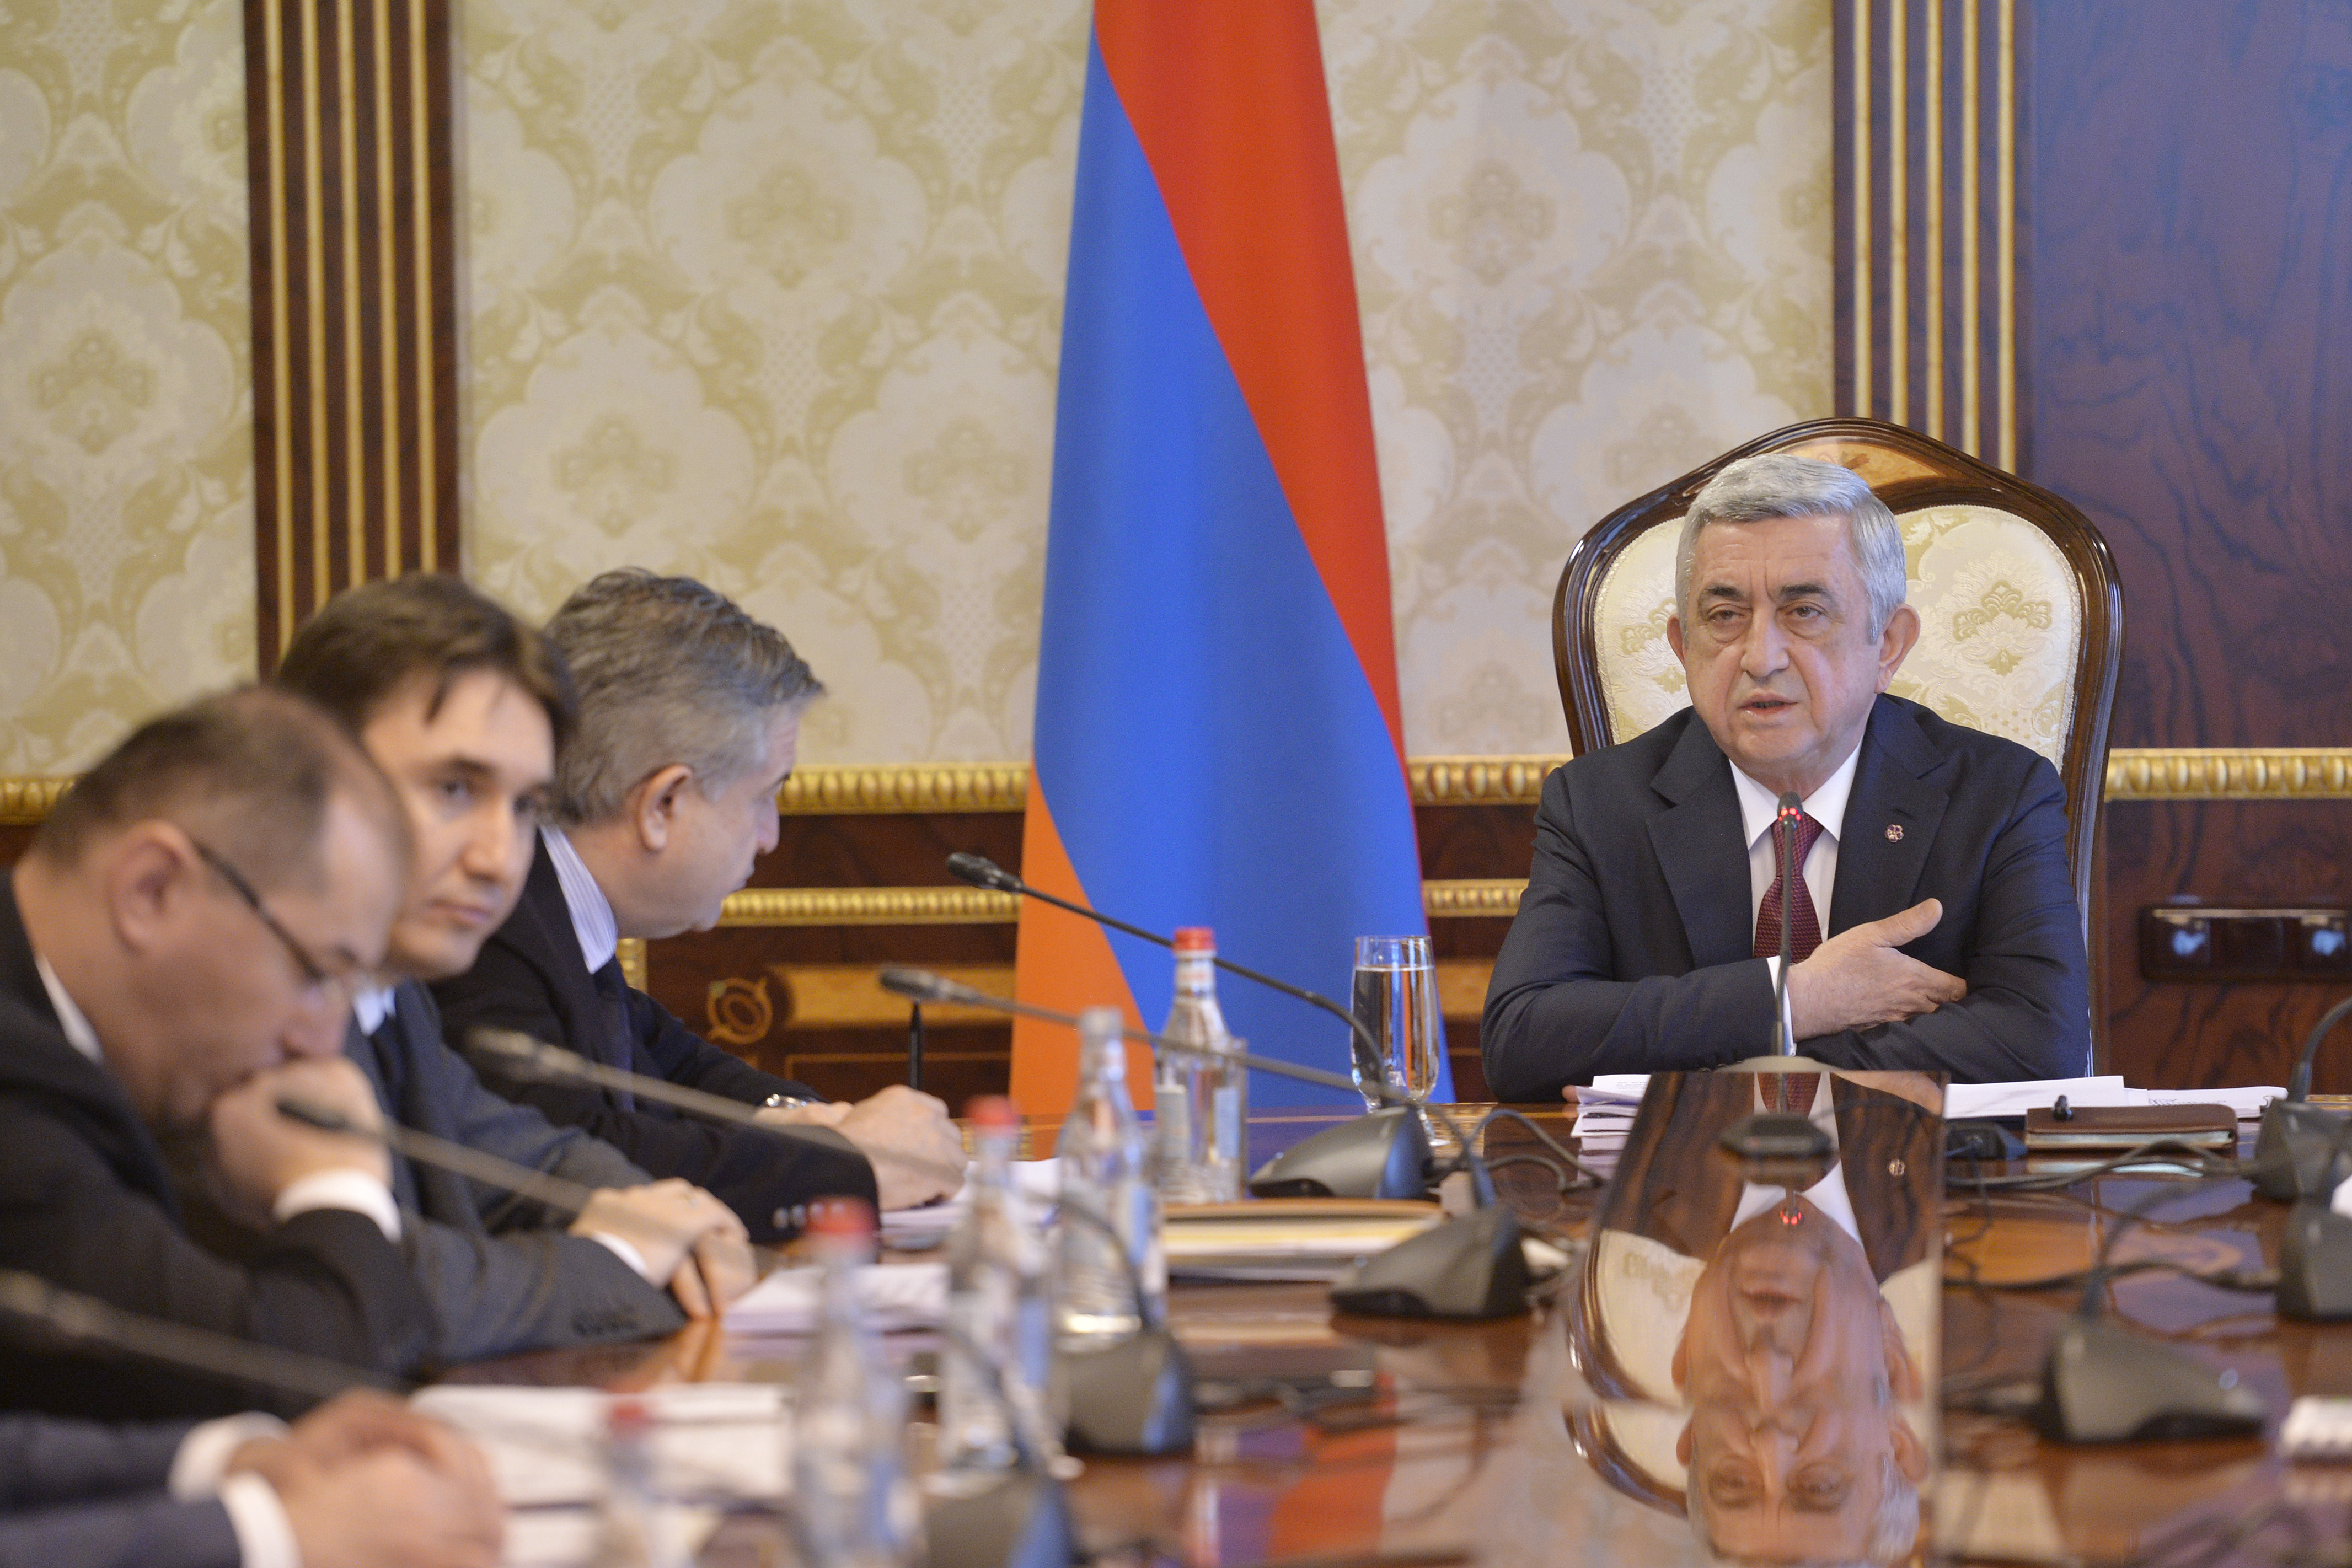 Экономический рост Армении должен быть доступен для всех слоев общества - президент